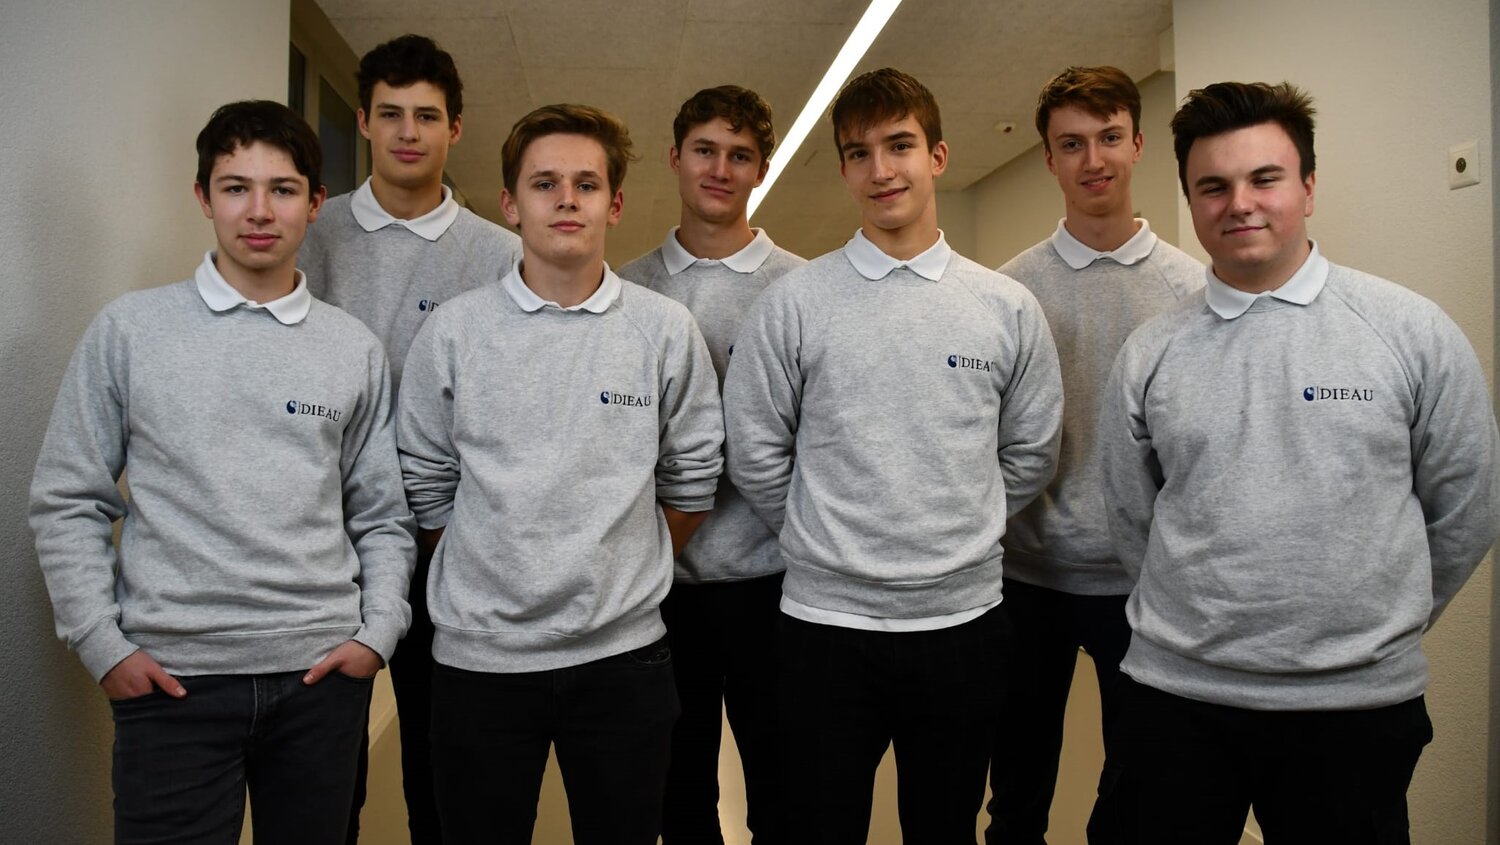 Gruppenfoto der 7 Jungs von Dieau